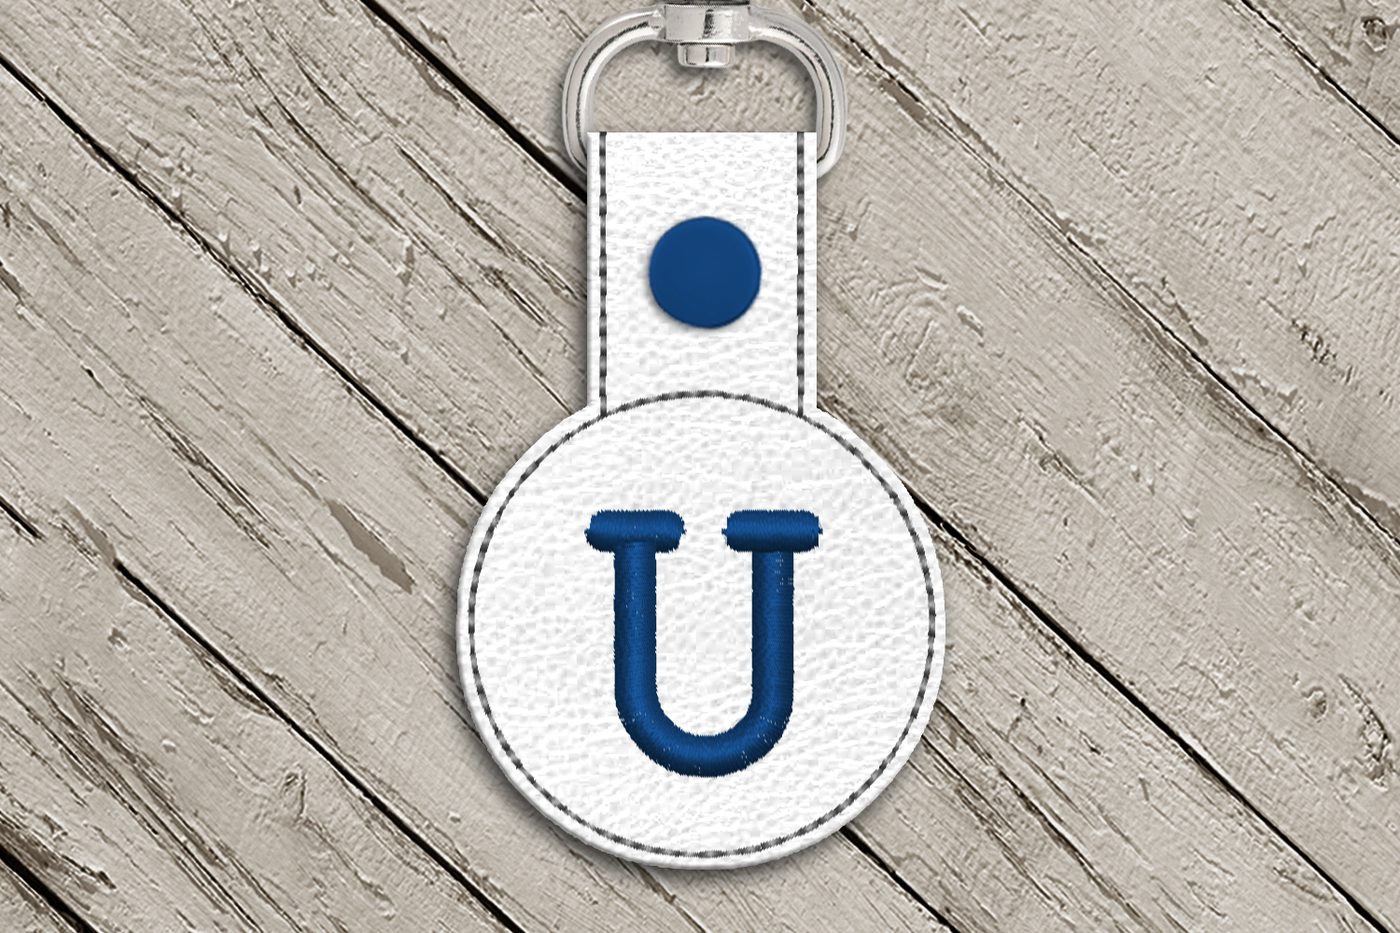 Letter U in the hoop key fob design